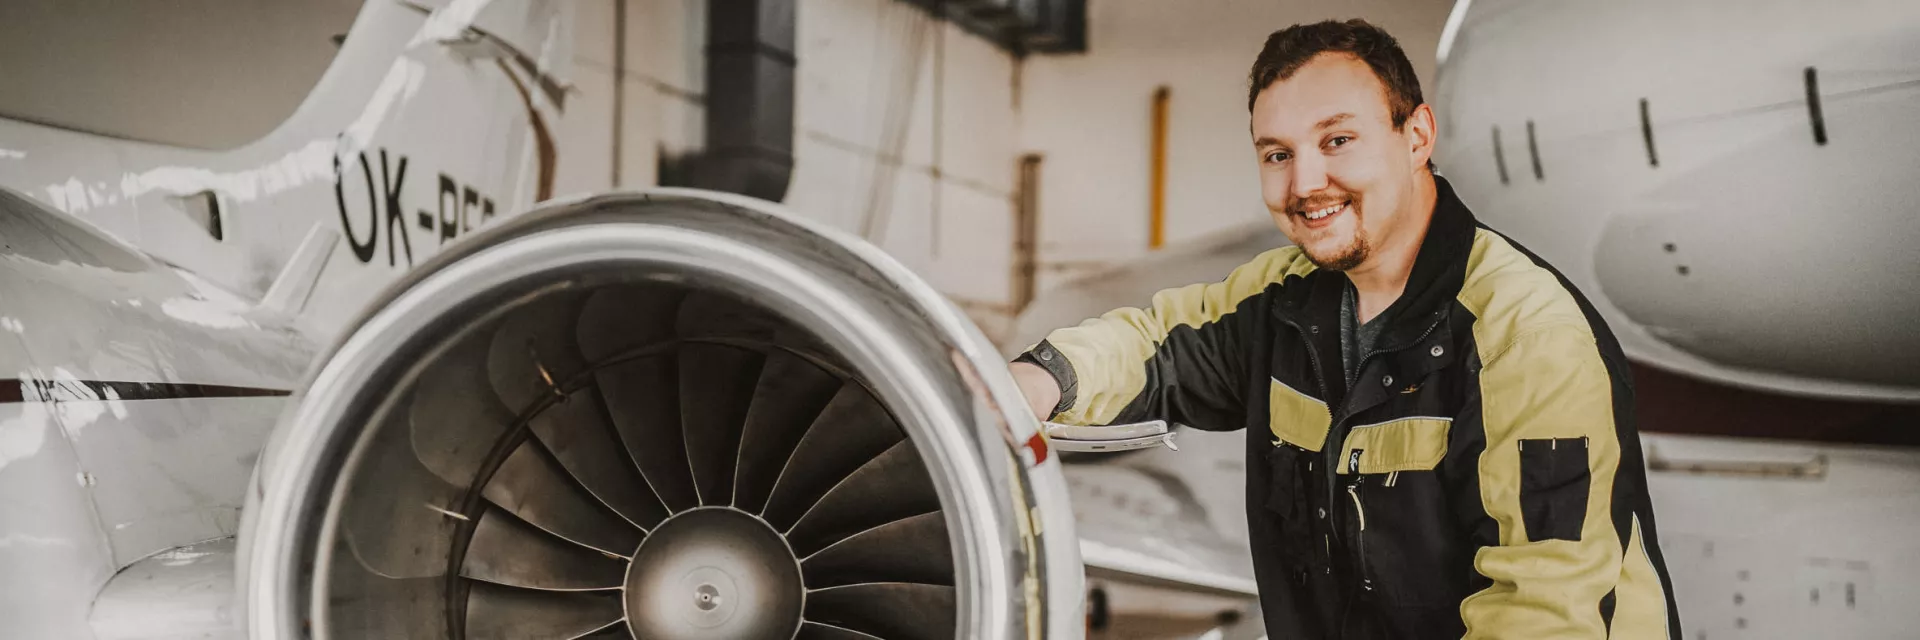 Aircraft servicing and maintenance